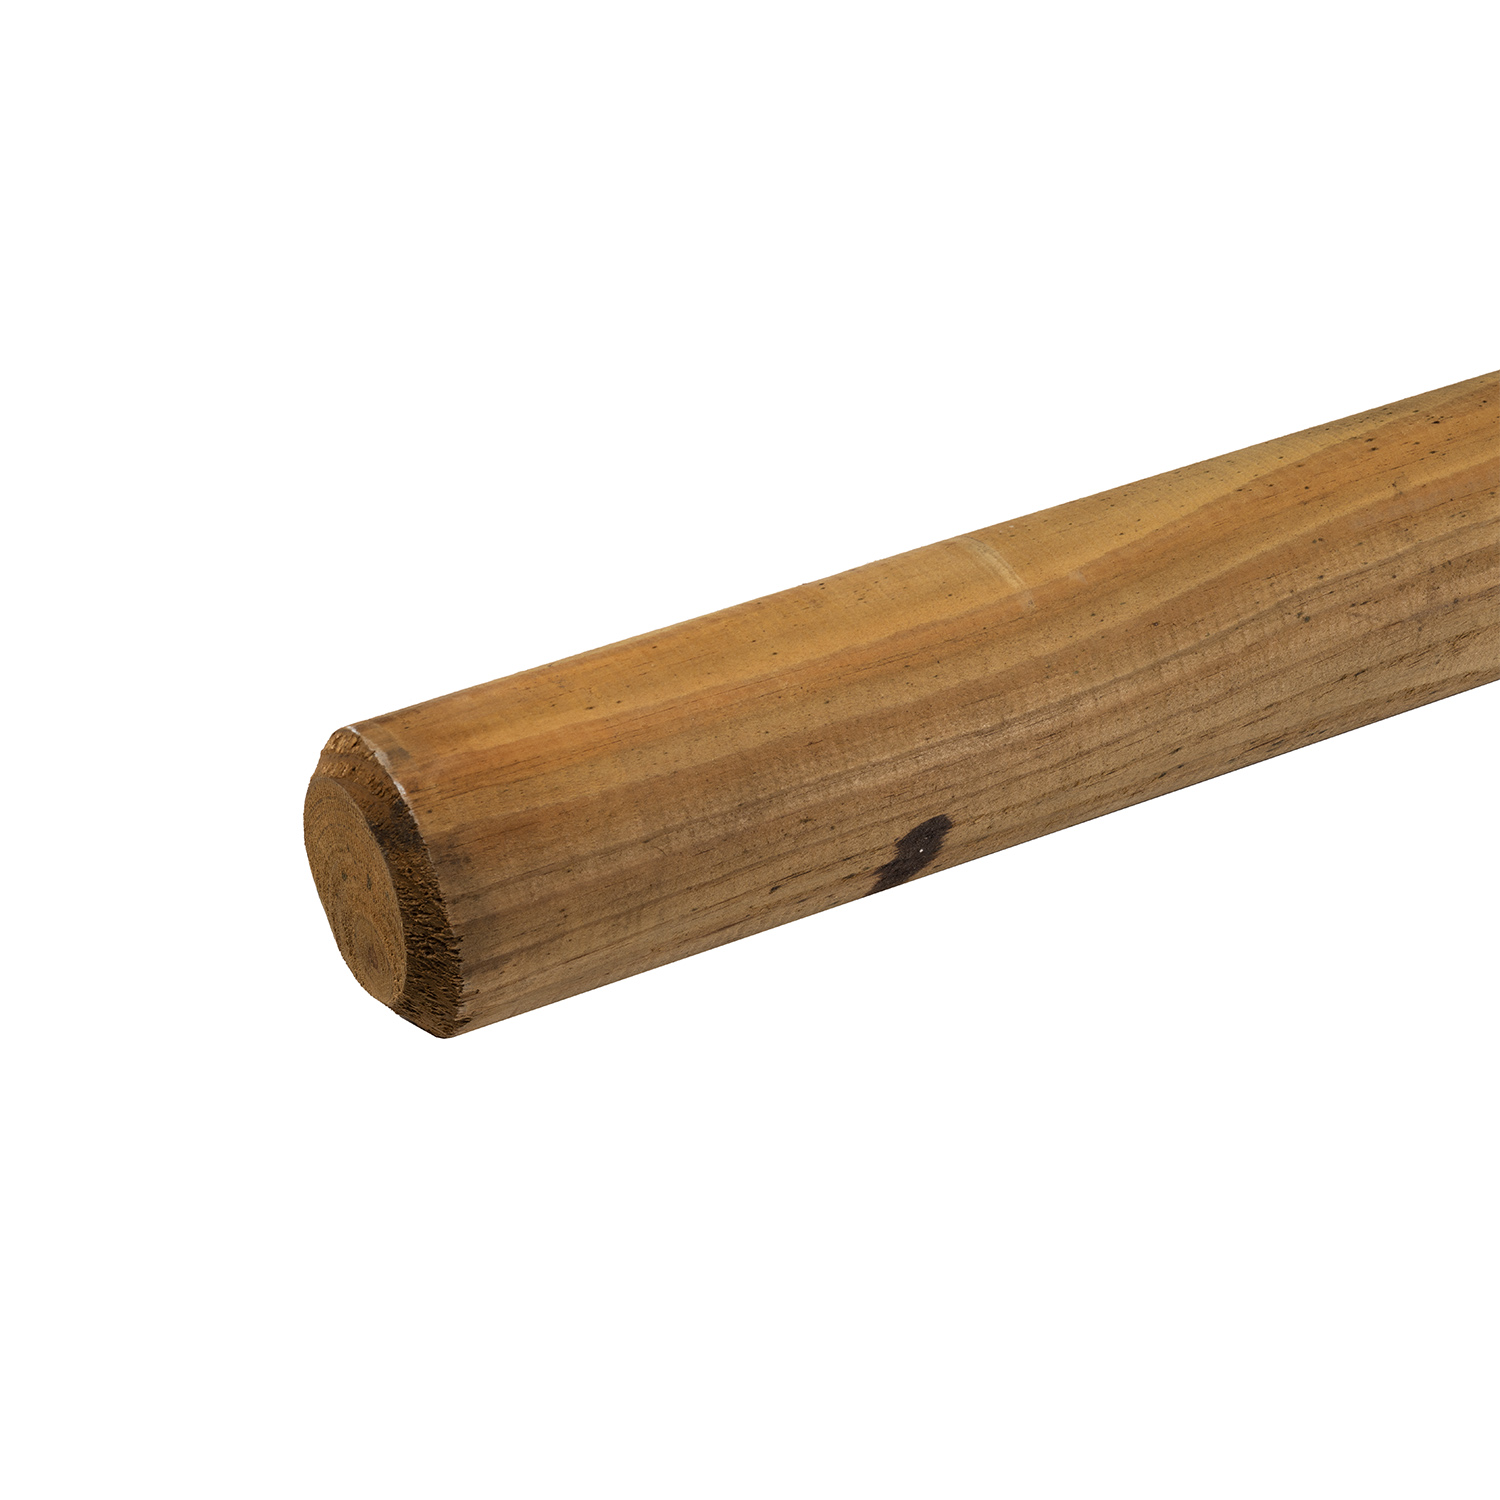 Usos de los postes de madera de pino